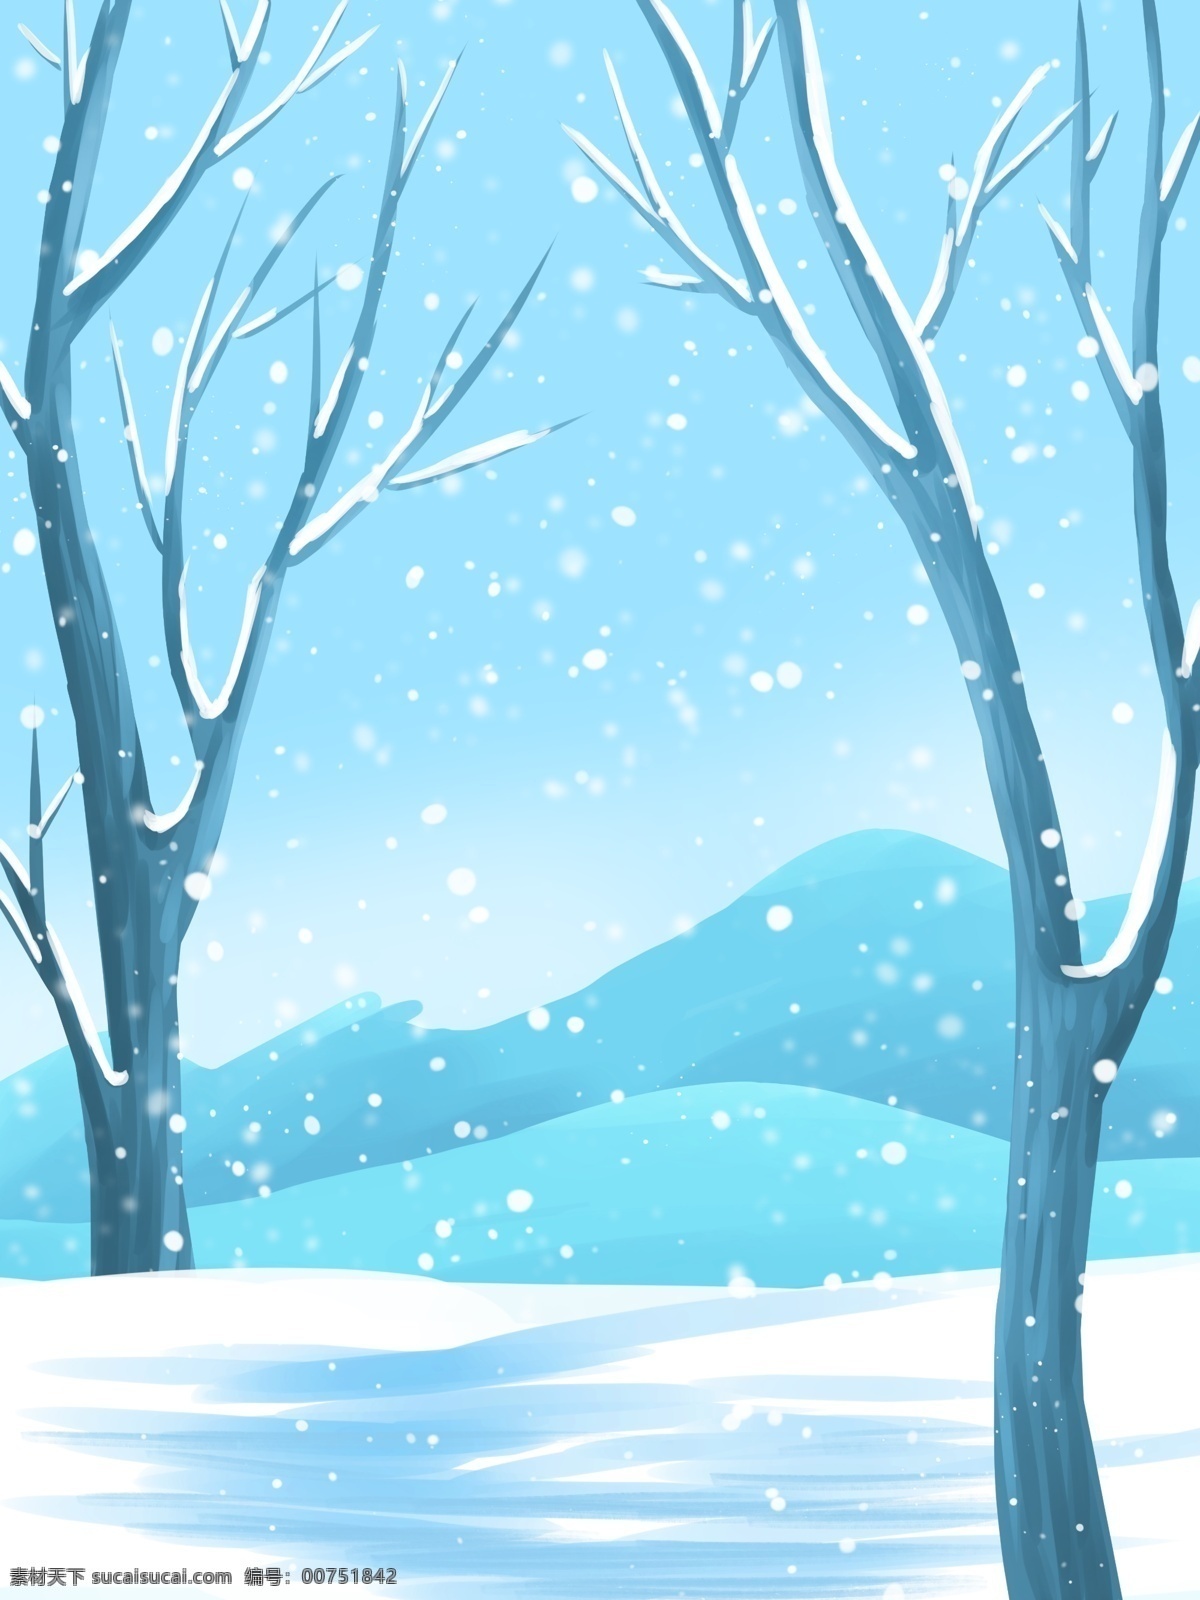 彩绘 二十四节气 小雪 风景 背景 雪花 背景设计 冬天背景 唯美雪地 雪景 彩绘背景 大寒背景 树木